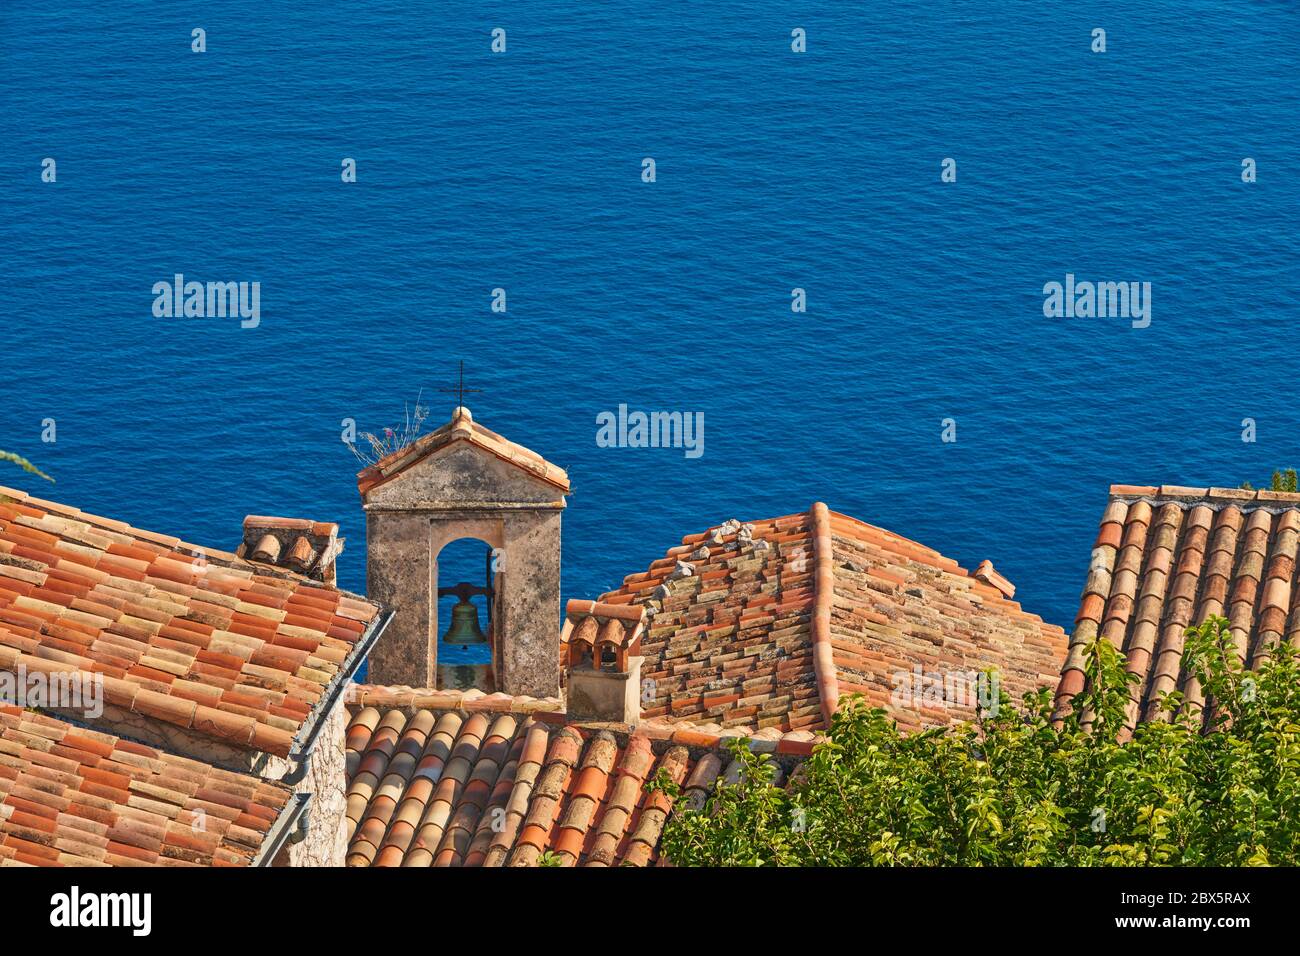 Toits en tuiles de Terra cotta et clocher du village d'Eze avec la mer Méditerranée. Côte d'Azur, Alpes-Maritimes (06), France Banque D'Images